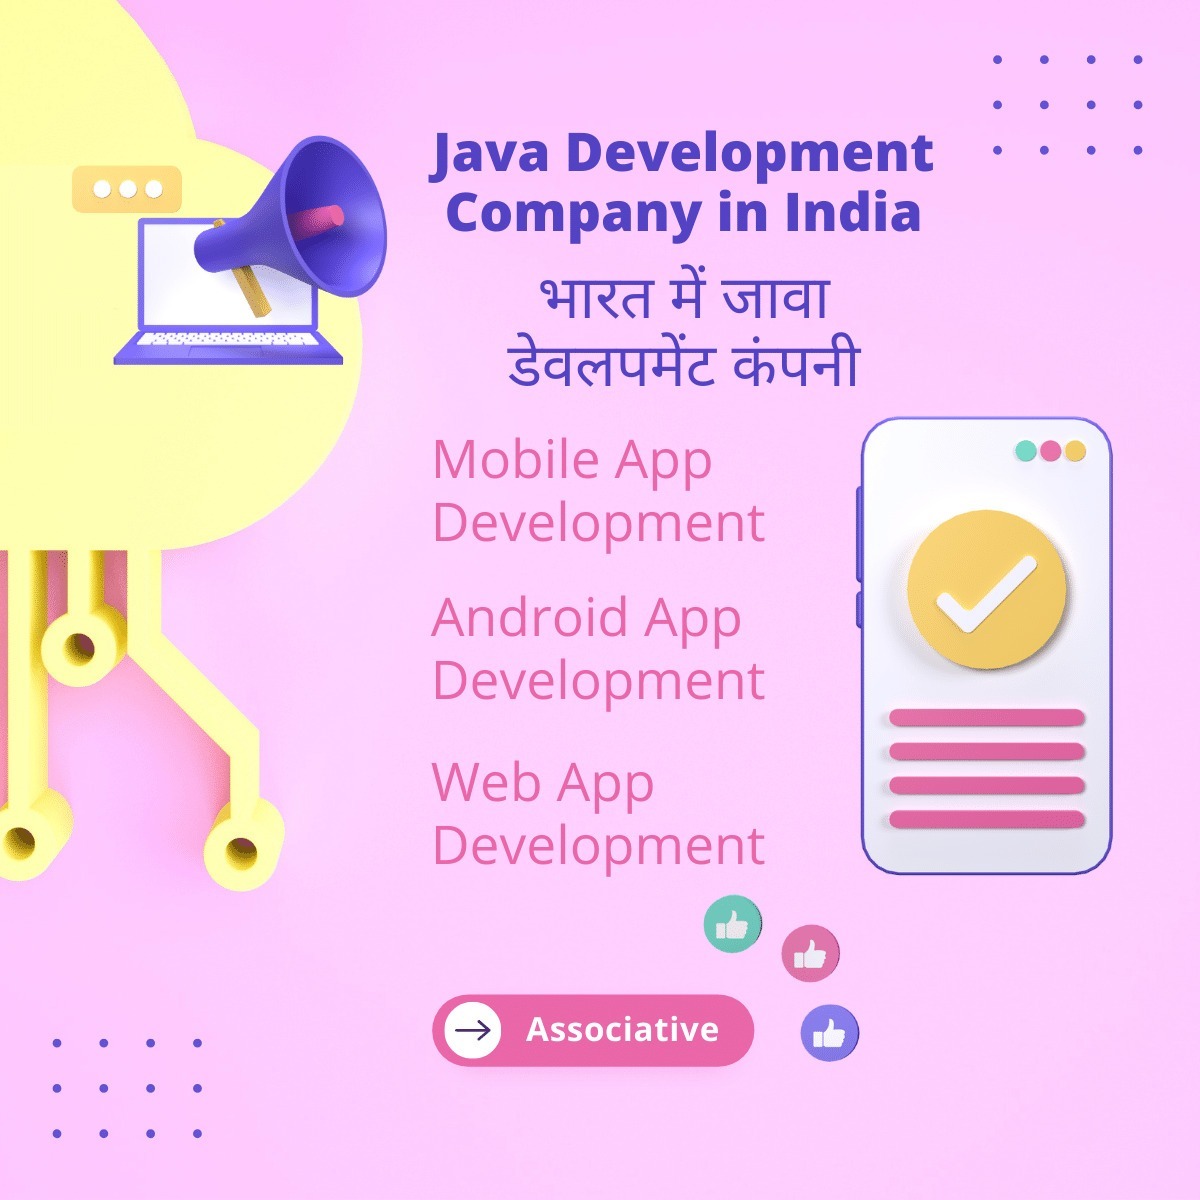 Java Development Company in India भारत में जावा डेवलपमेंट कंपनी